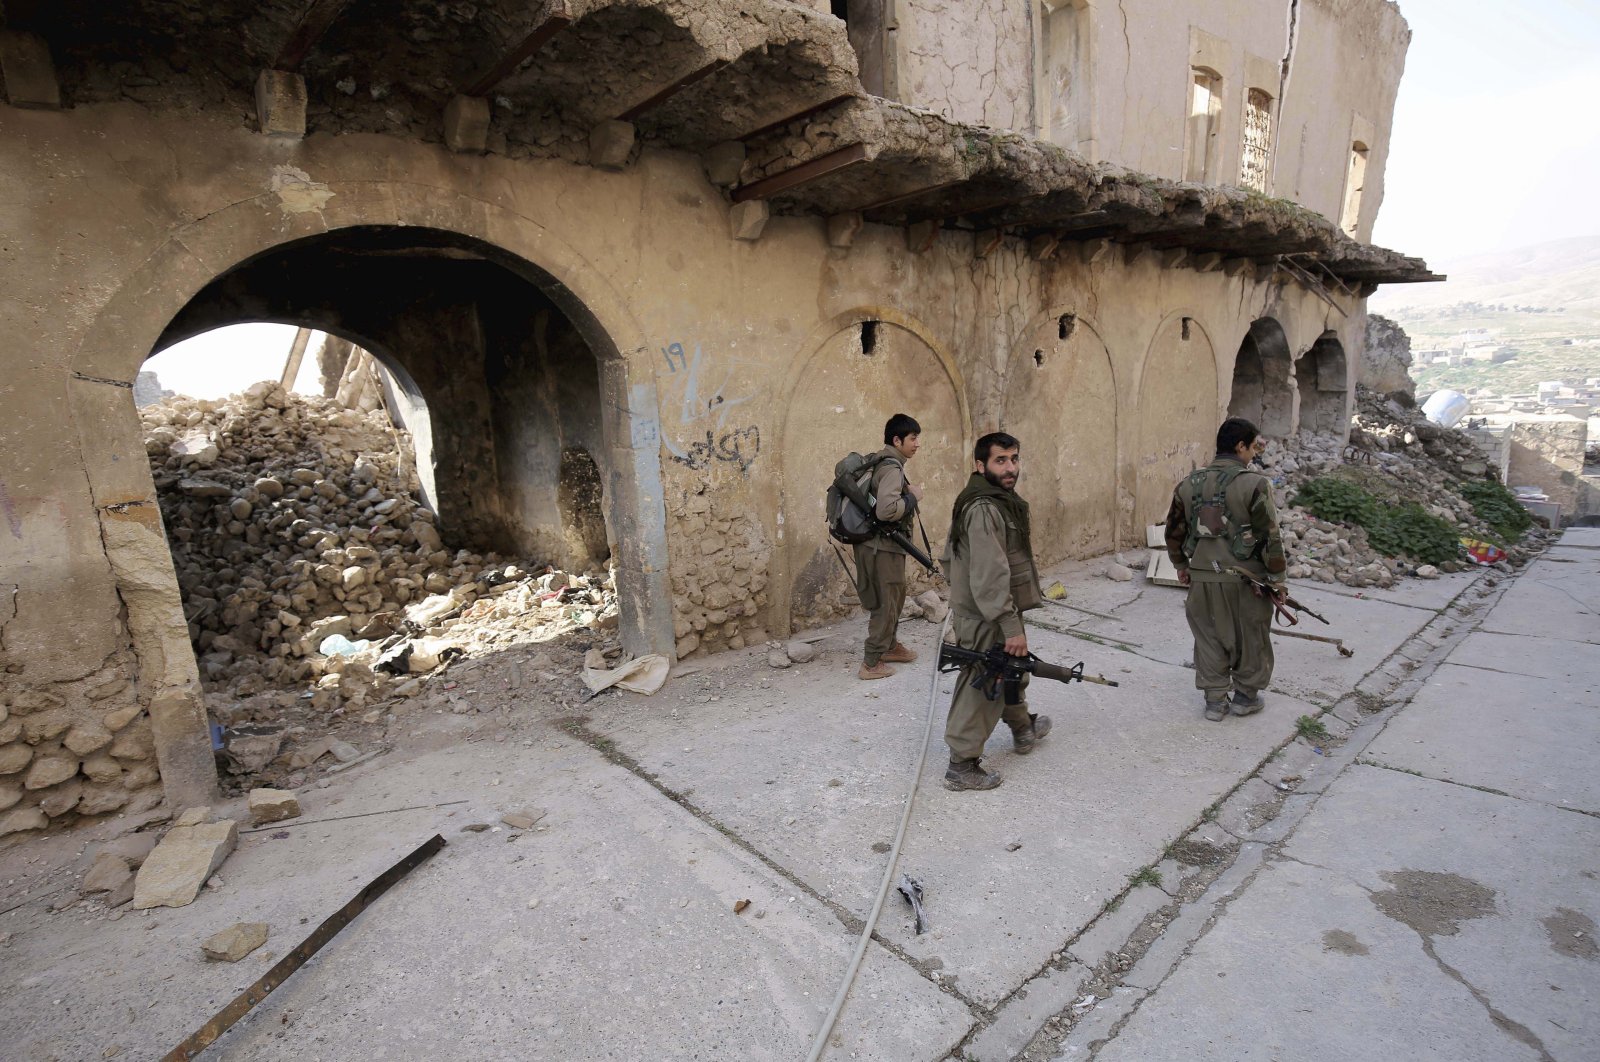 PKK terrorists walk on the streets of Sinjar, Iraq, Jan. 29, 2015. (AP Photo)